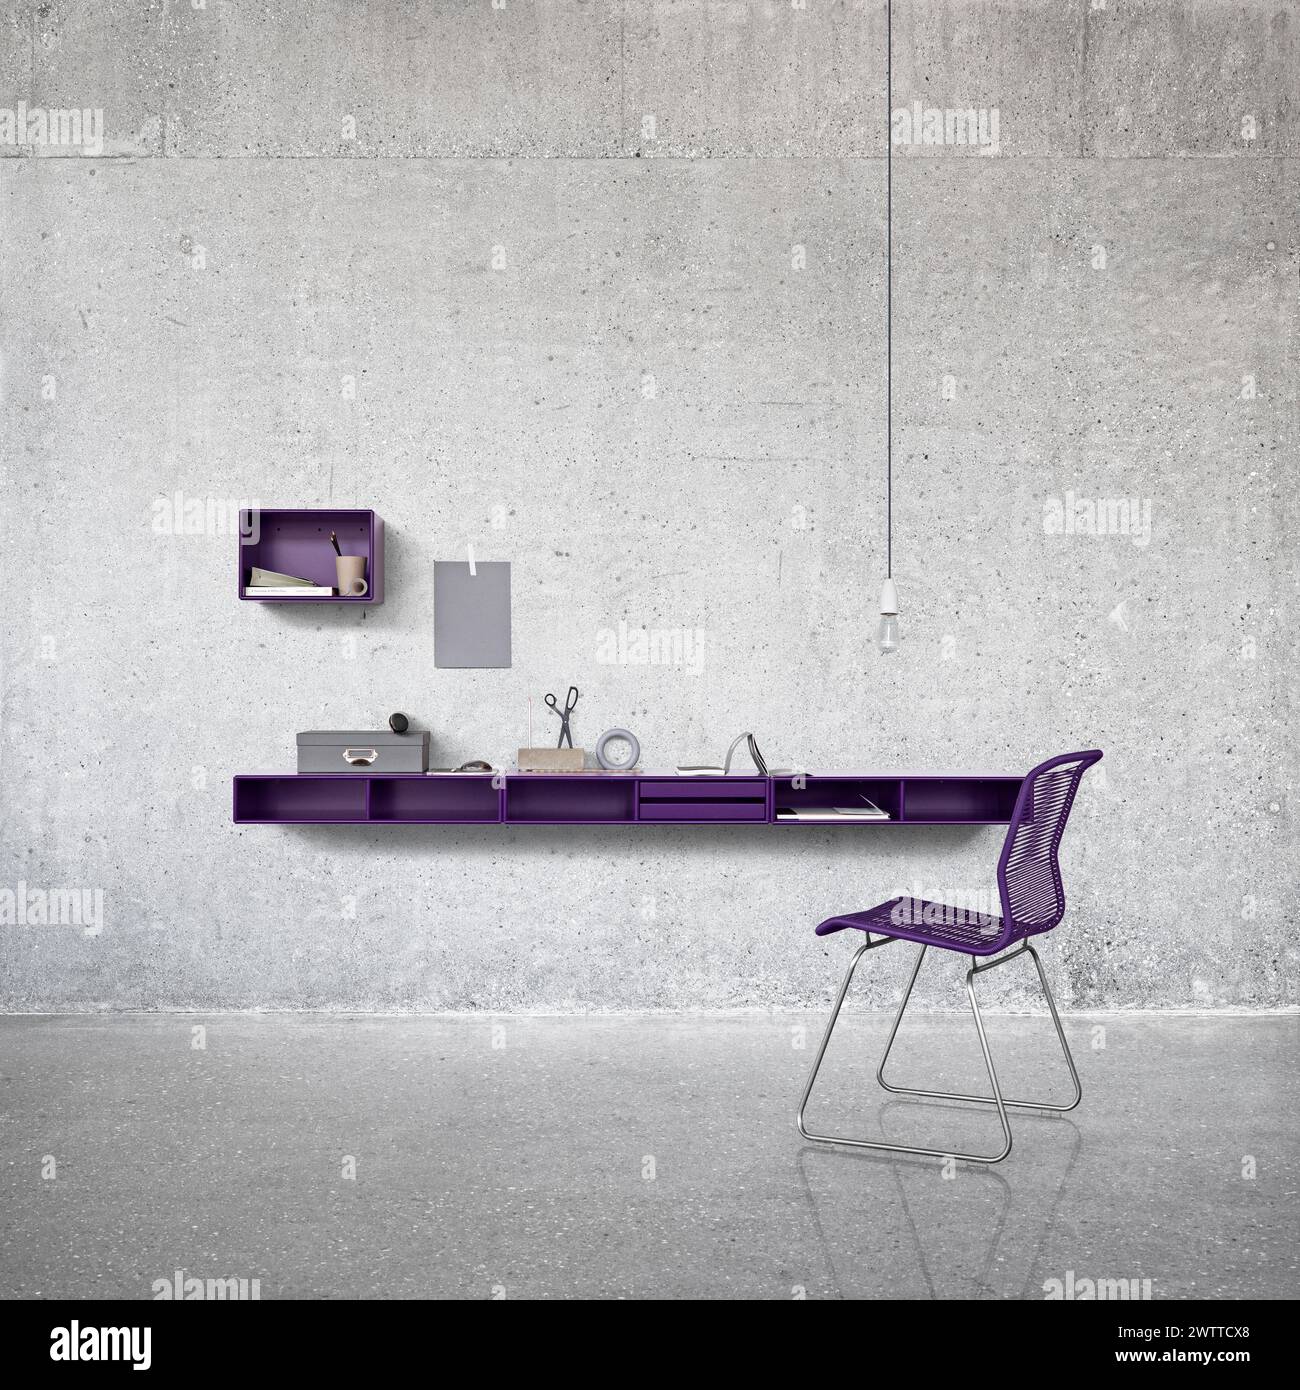 Bureau à domicile moderne minimaliste avec une élégante chaise violette et une élégante étagère murale Banque D'Images